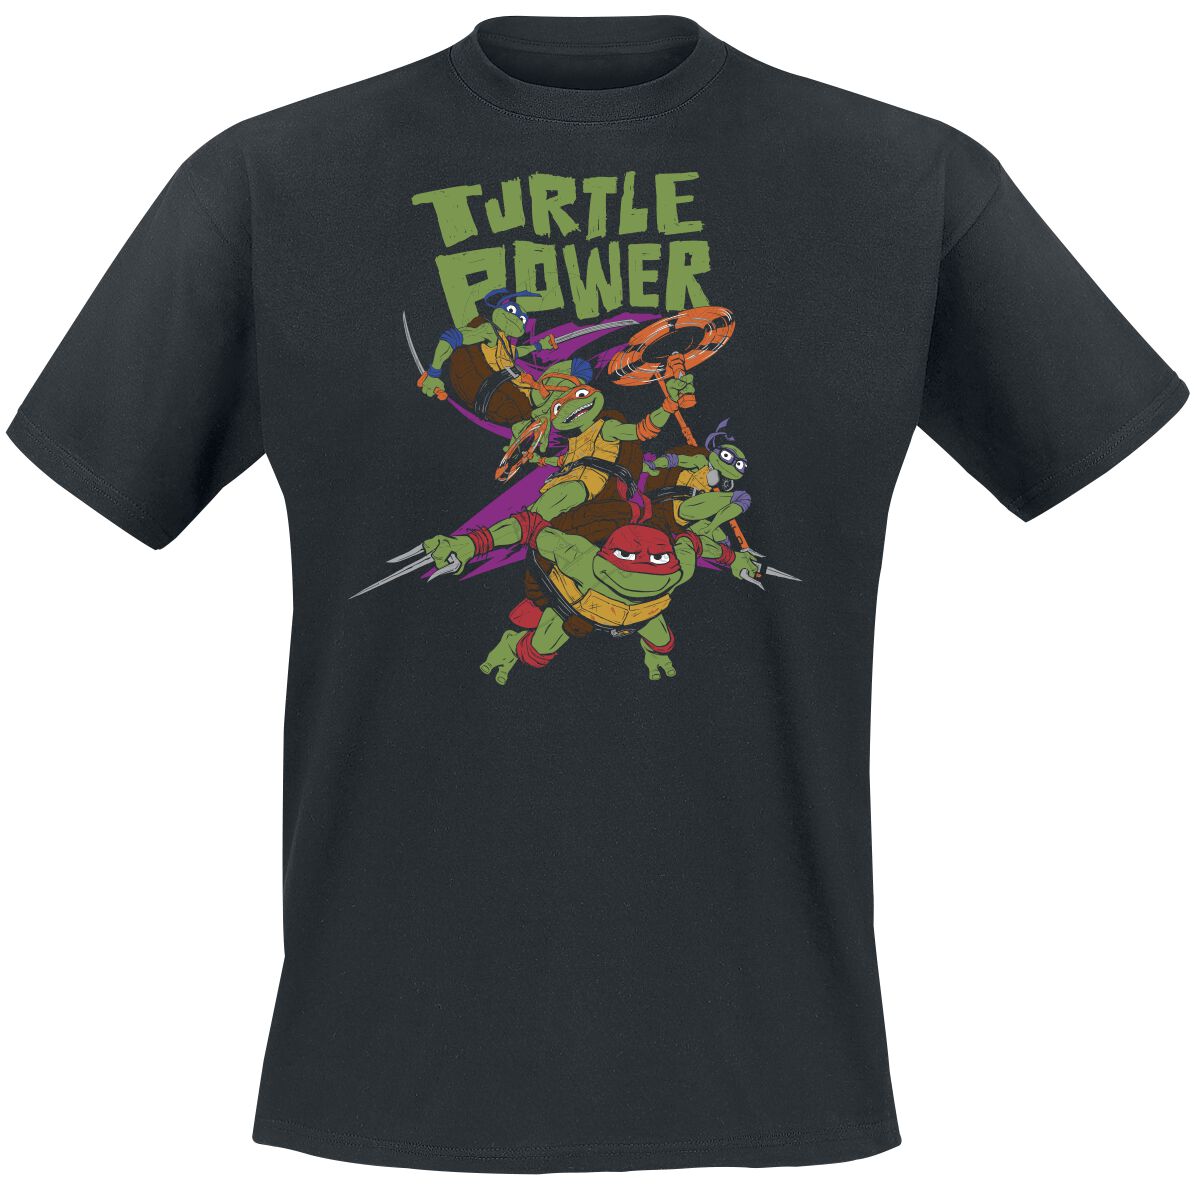 Teenage Mutant Ninja Turtles T-Shirt - Turtle Power - S bis L - für Männer - Größe L - schwarz  - EMP exklusives Merchandise!